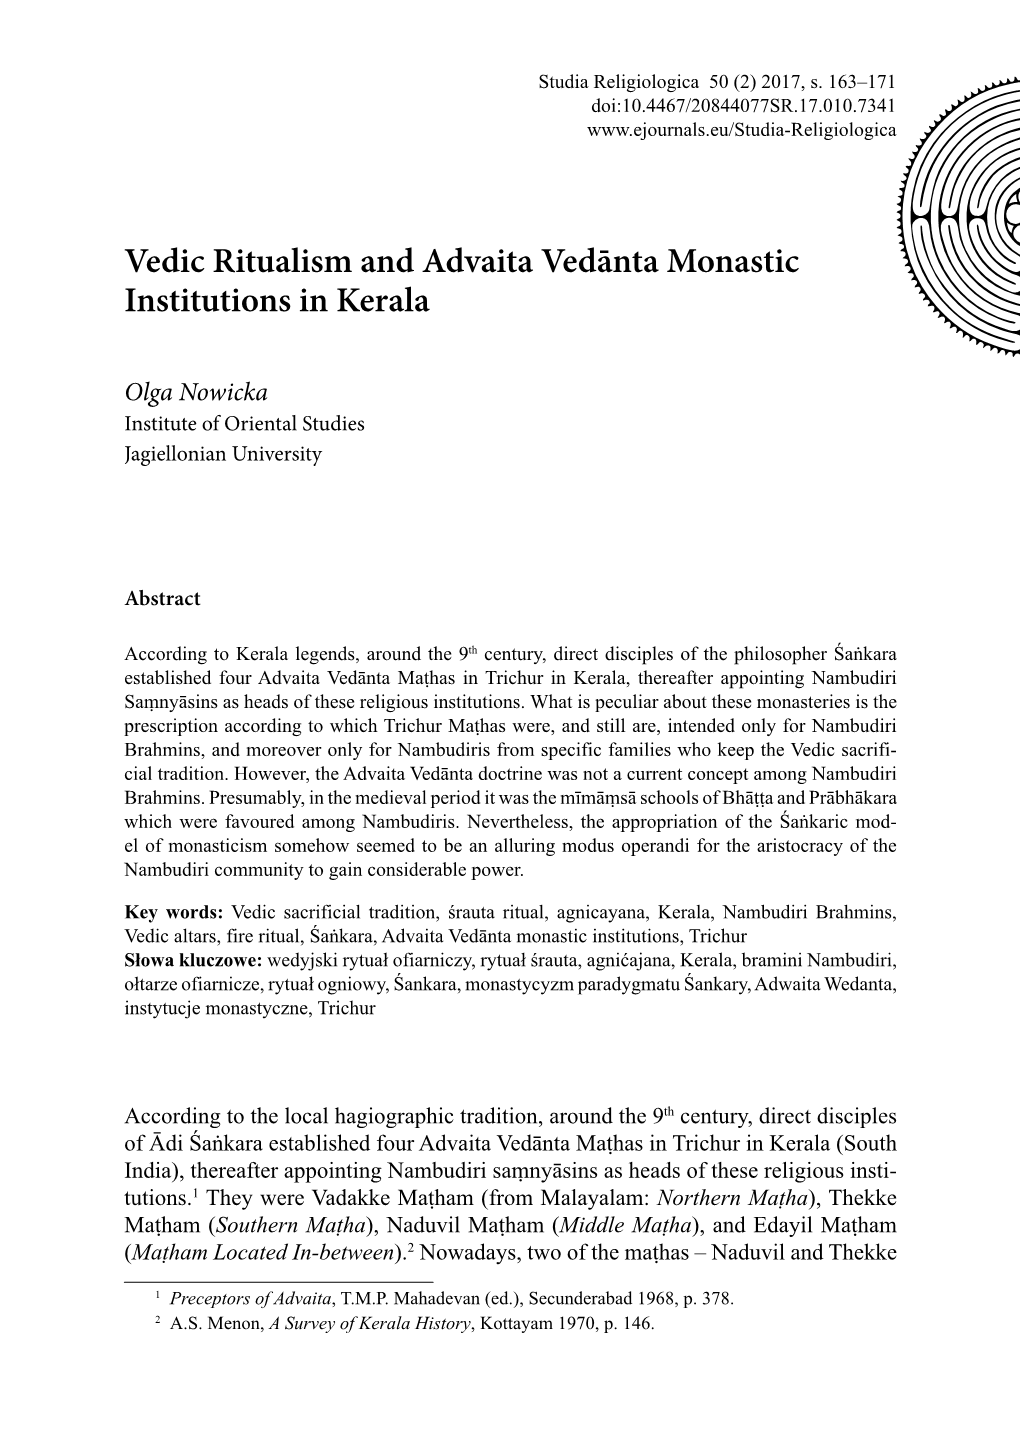 Vedic Ritualism and Advaita Vedānta Monastic Institutions in Kerala